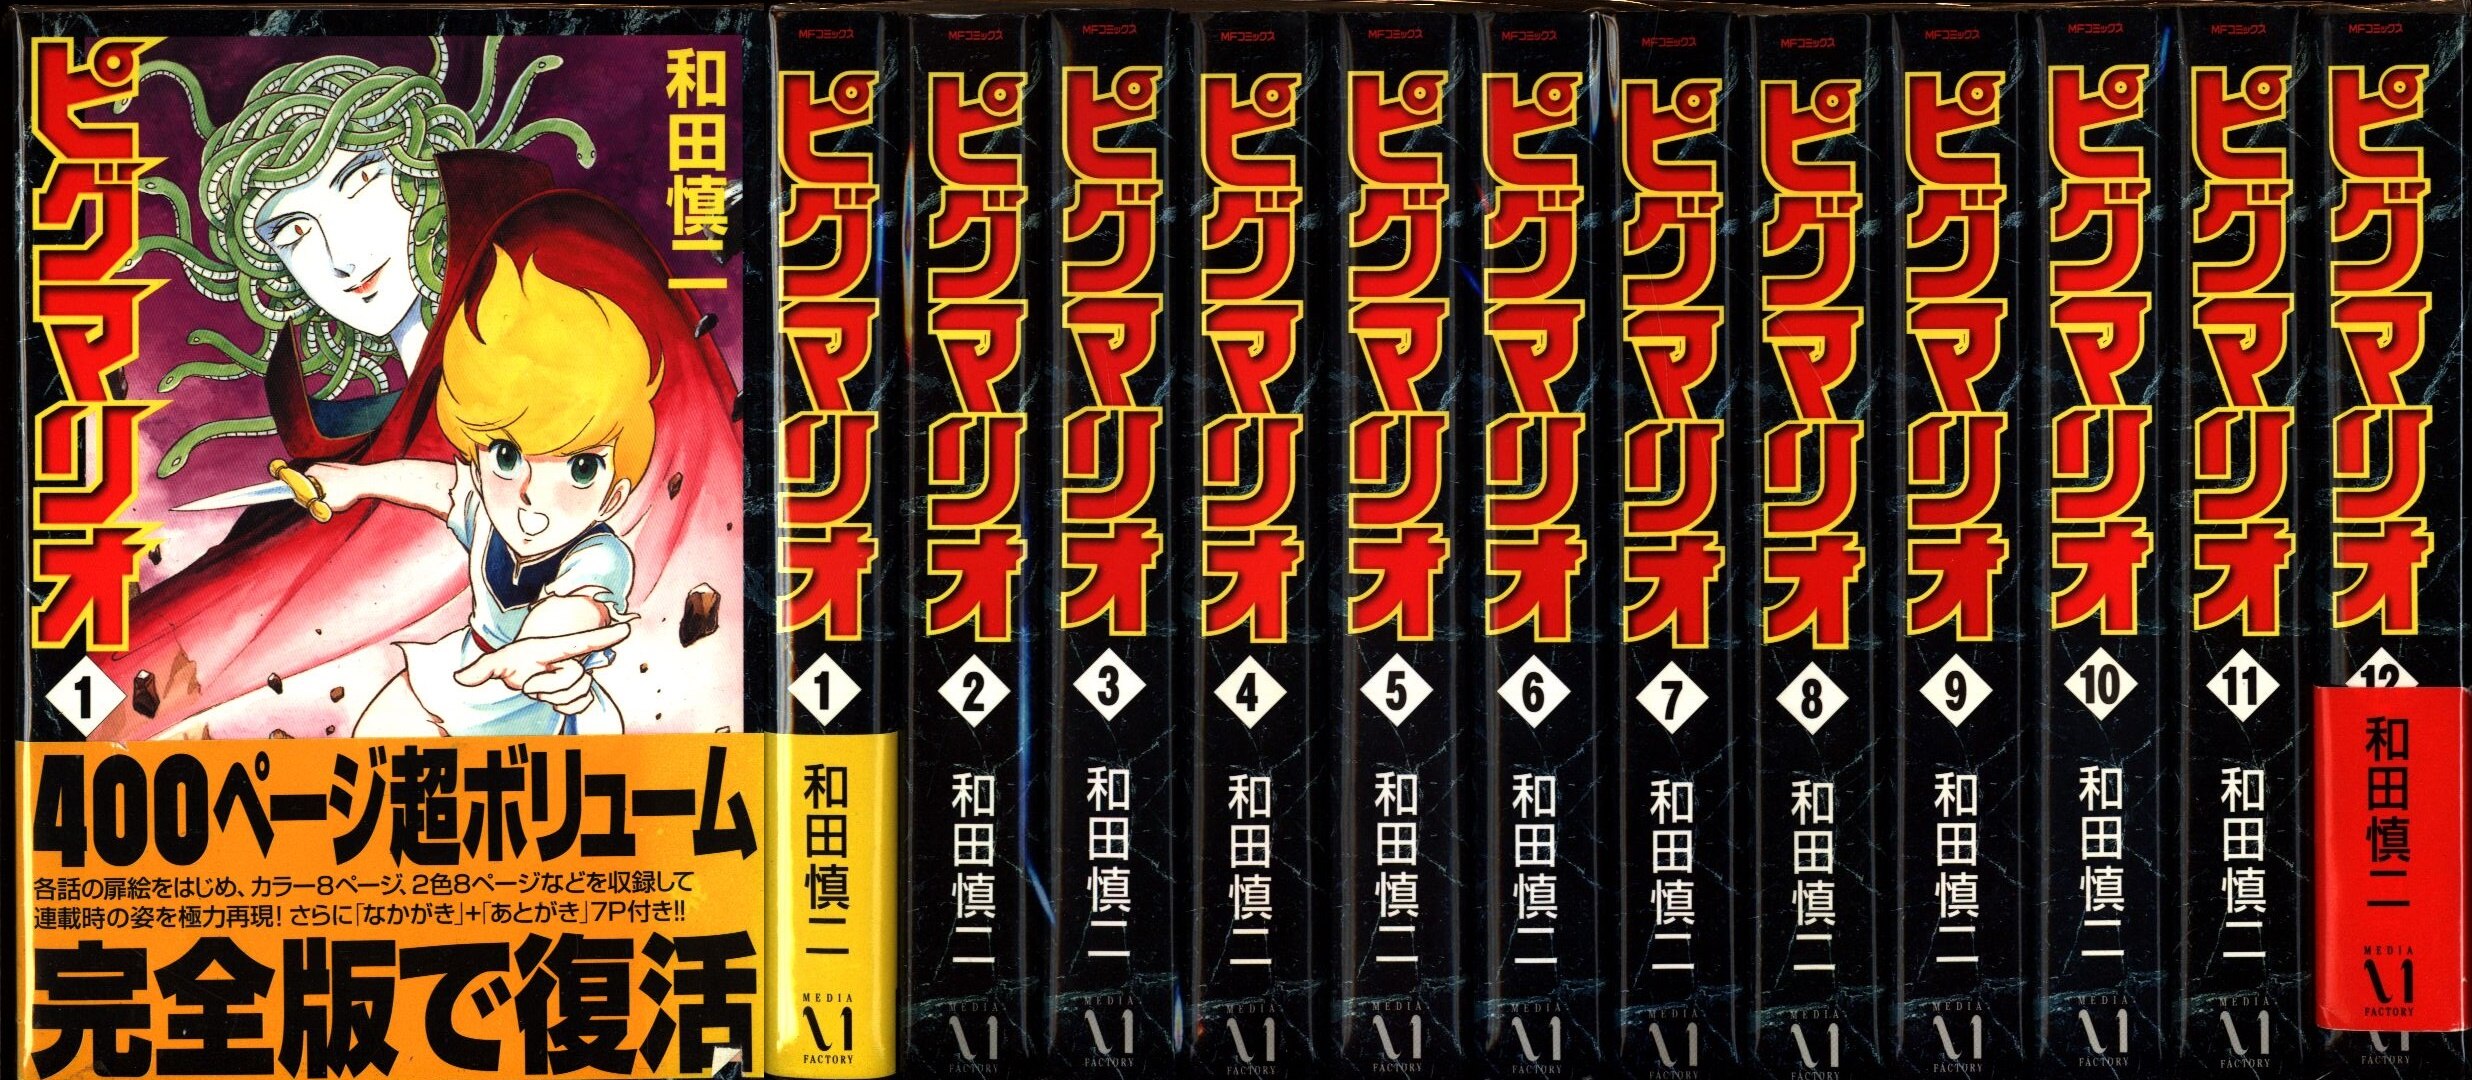 商品サイズ 和田慎二「ピグマリオ」全12巻セット 全巻 初版 ワイド版 